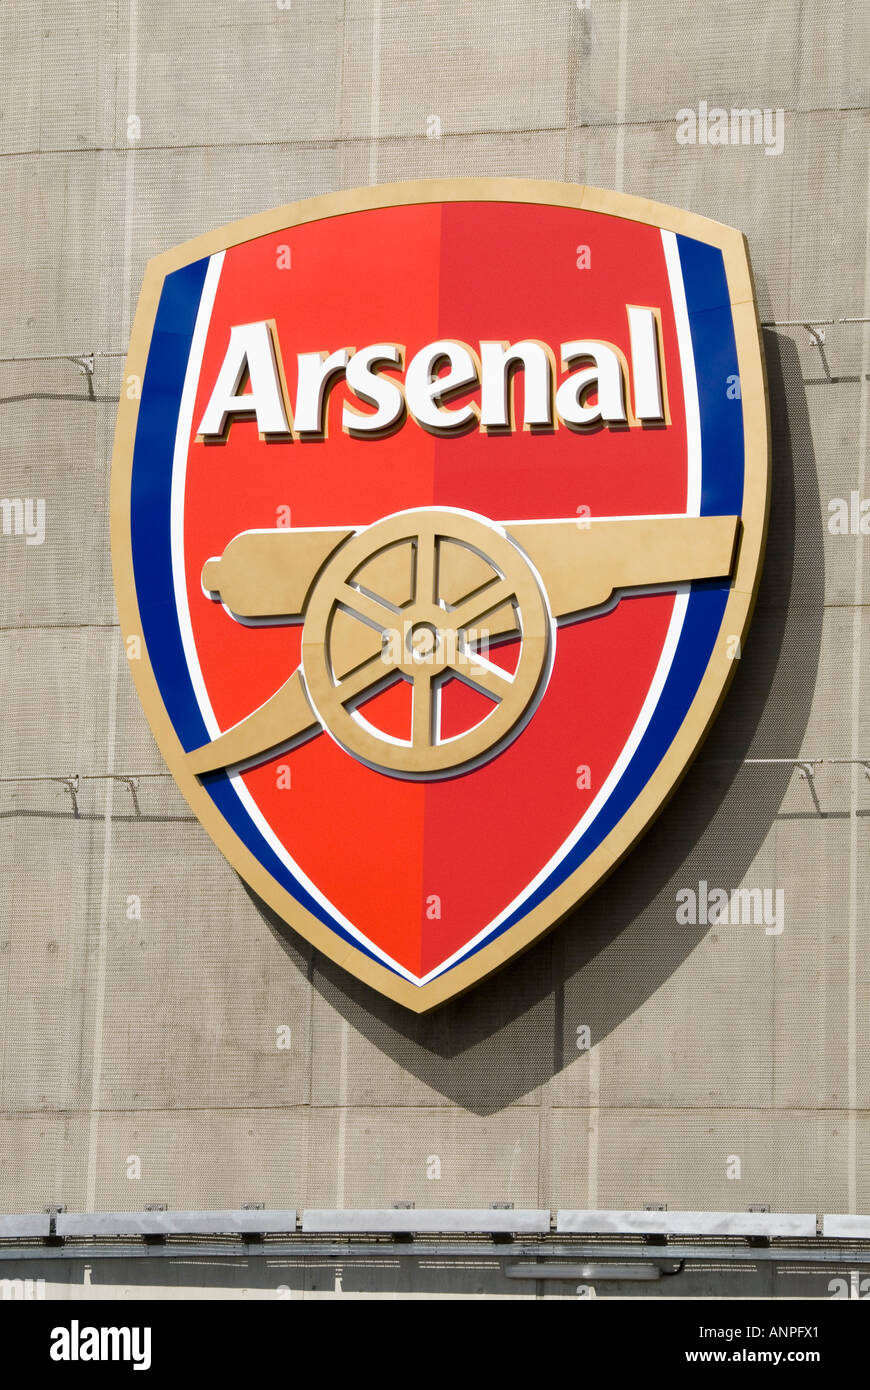 Gros plan sur l'écusson de l'équipe du club de football Arsenal Gunners et  le logo de l'entreprise sur le mur du stade sportif Emirates Holloway  Londres England UK Photo Stock - Alamy